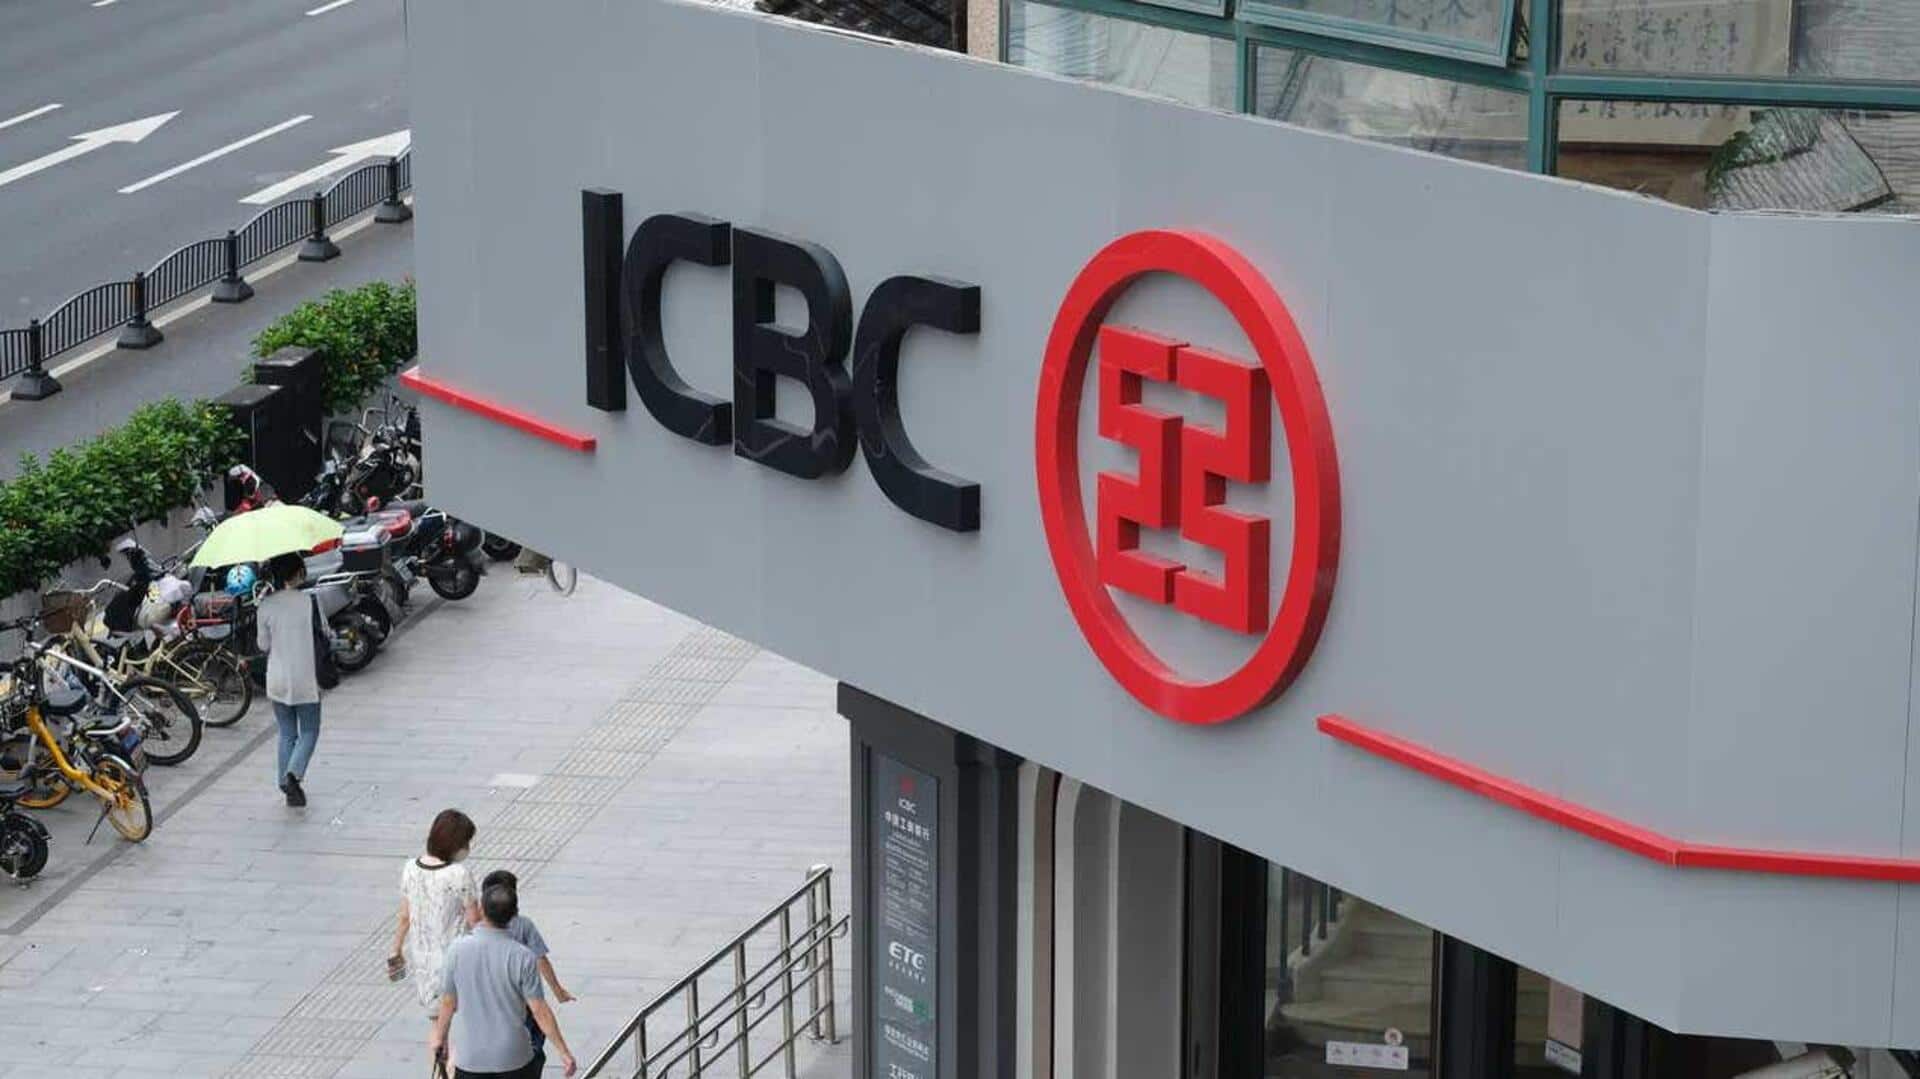 China's biggest bank ICBC falls victim to ransomware attack